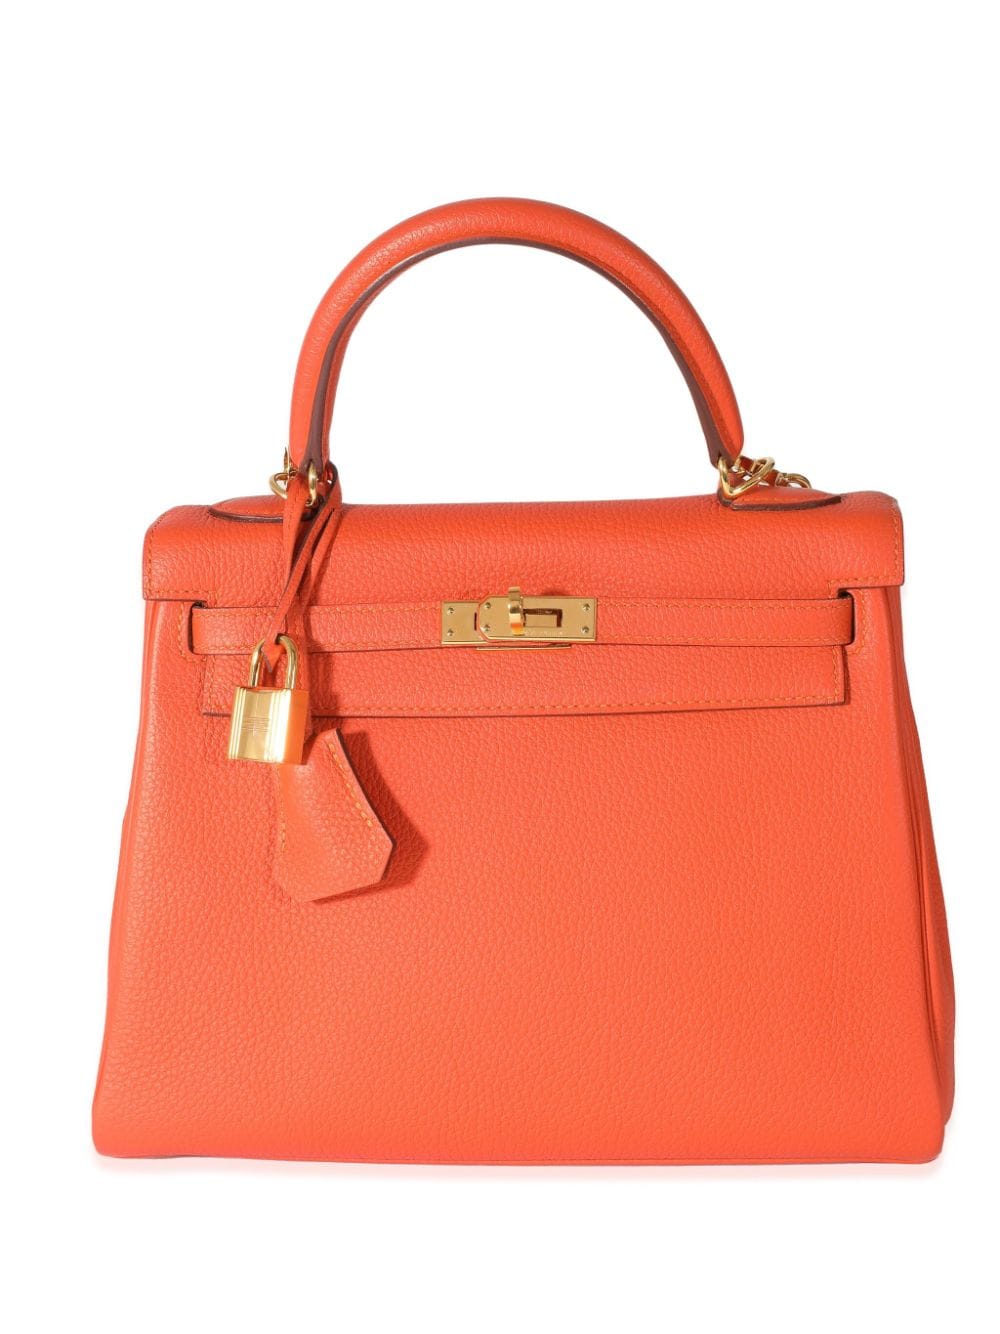 Pre-owned Hermes Kelly 25 Retourne Two-way Handbag In Orange